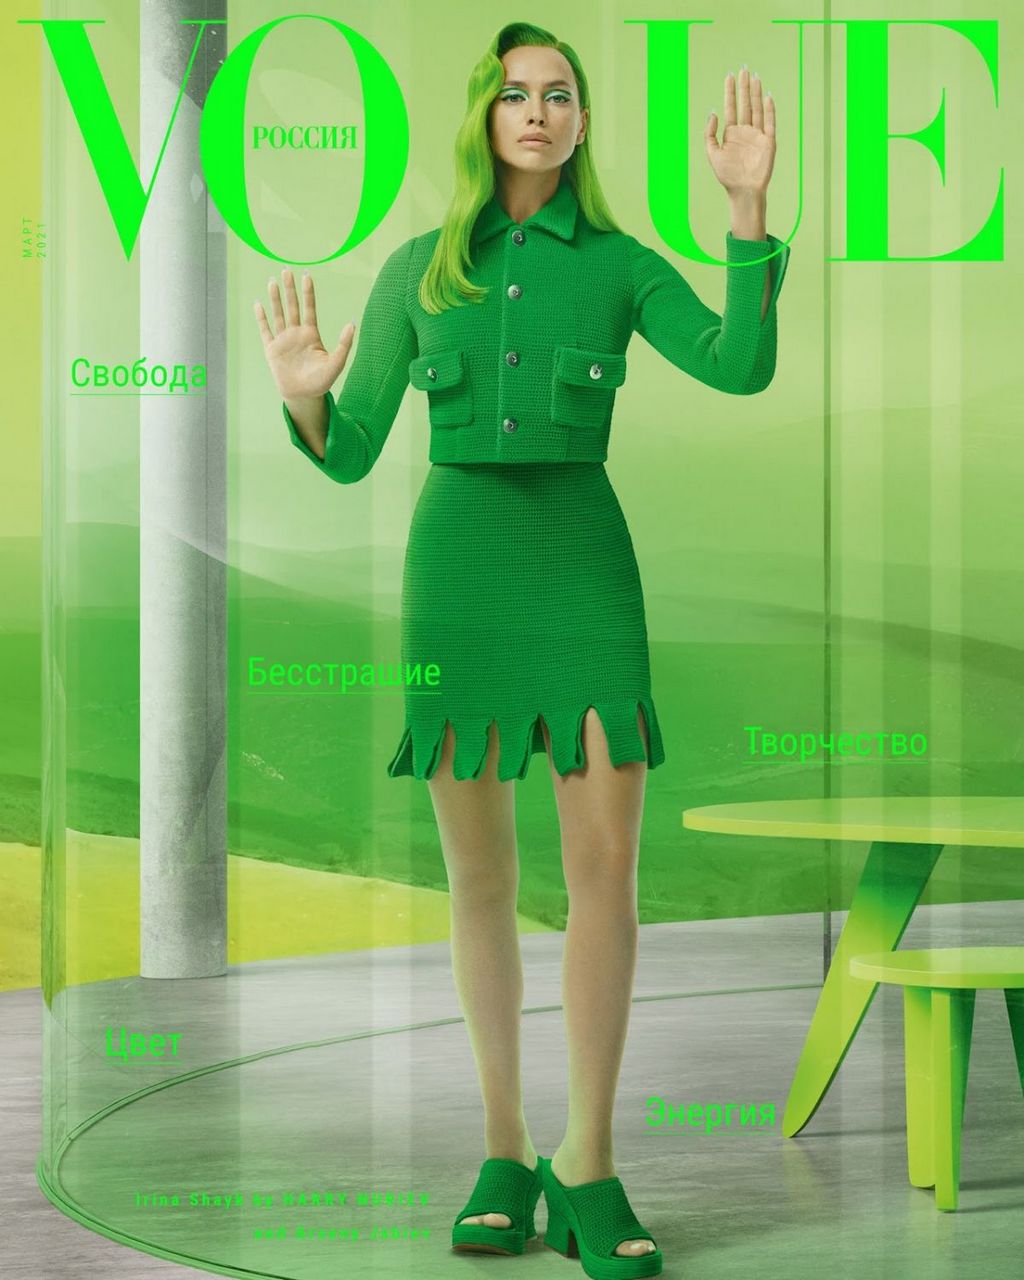 Irina Shayk For Vogue Magazine Russia March